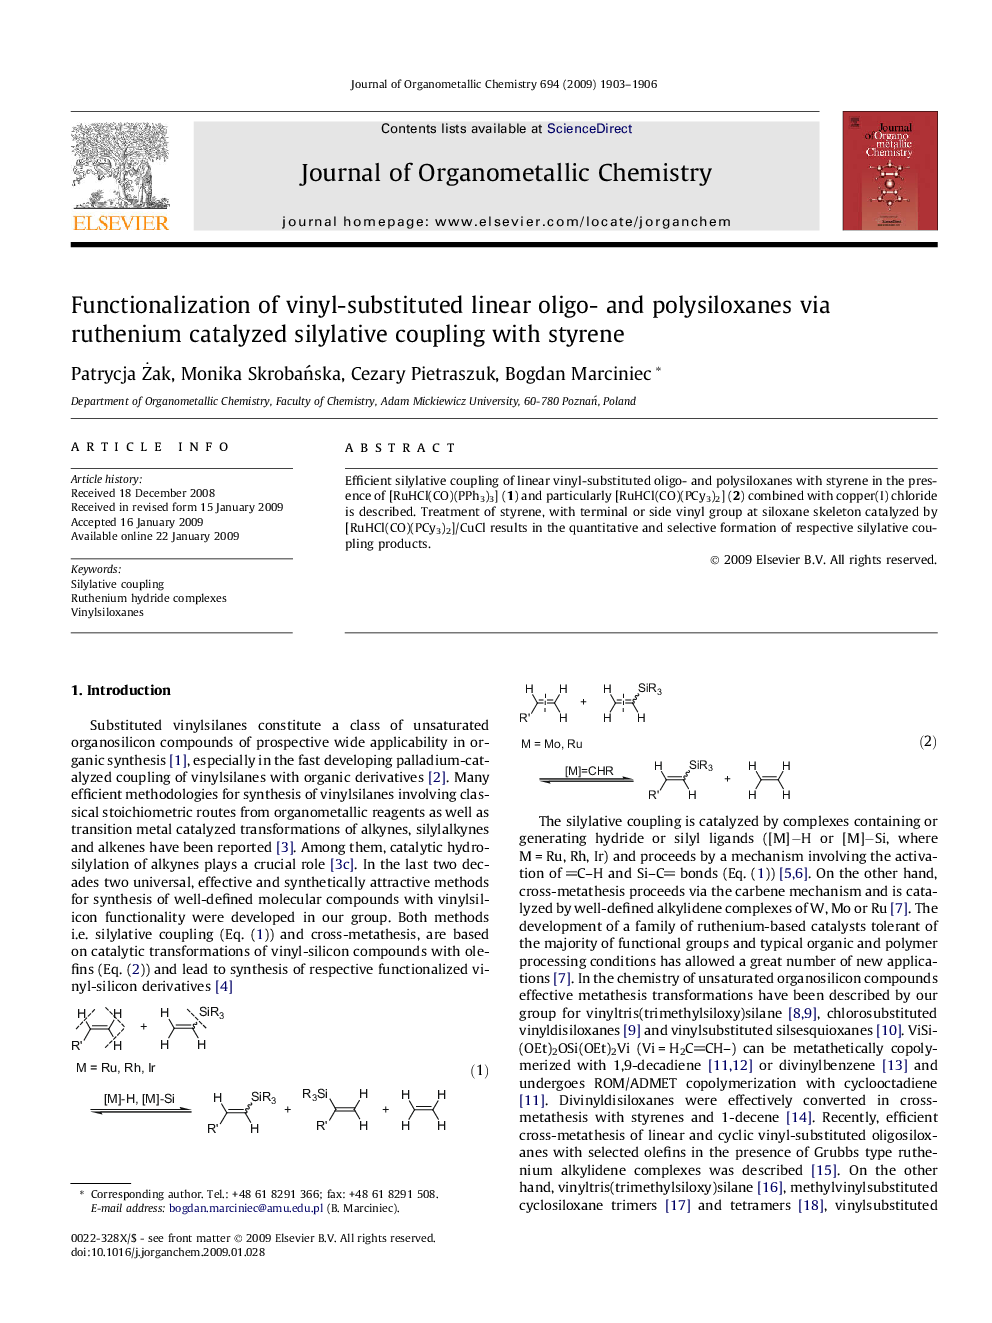 Functionalization of vinyl-substituted linear oligo- and polysiloxanes via ruthenium catalyzed silylative coupling with styrene